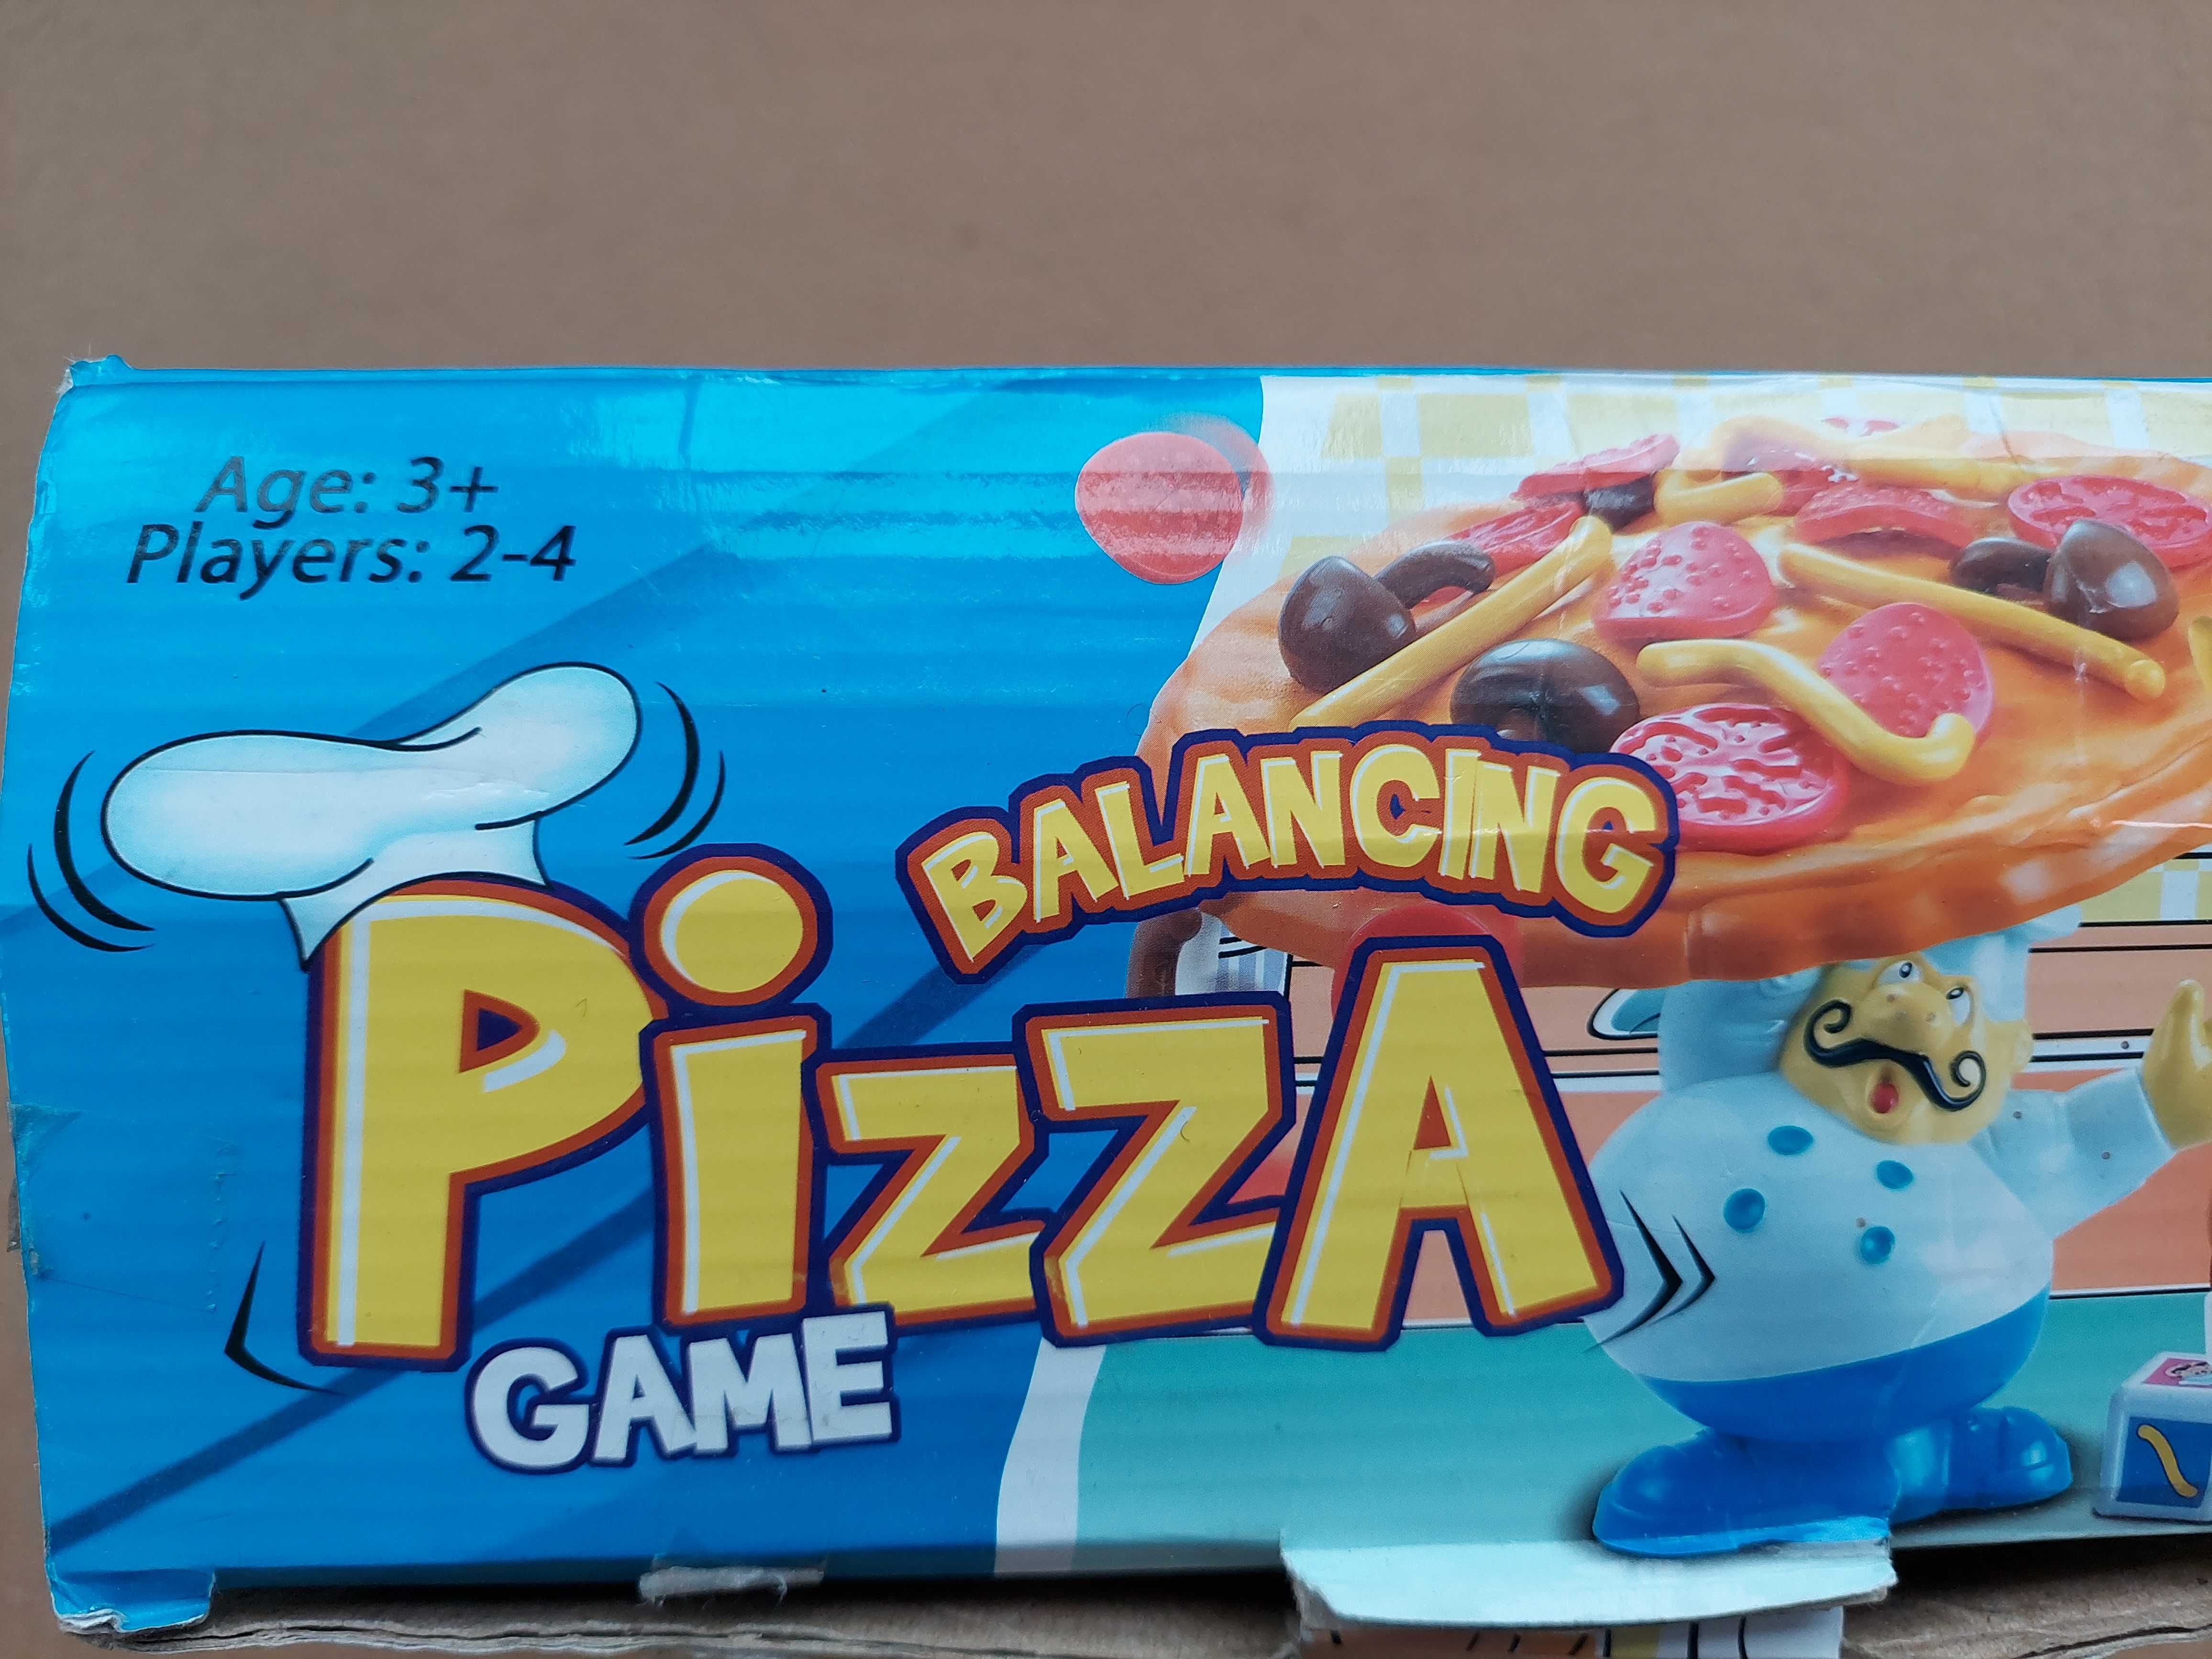 Настільна гра Tabletop Balancing Pizza Toy - весела розвага для родини